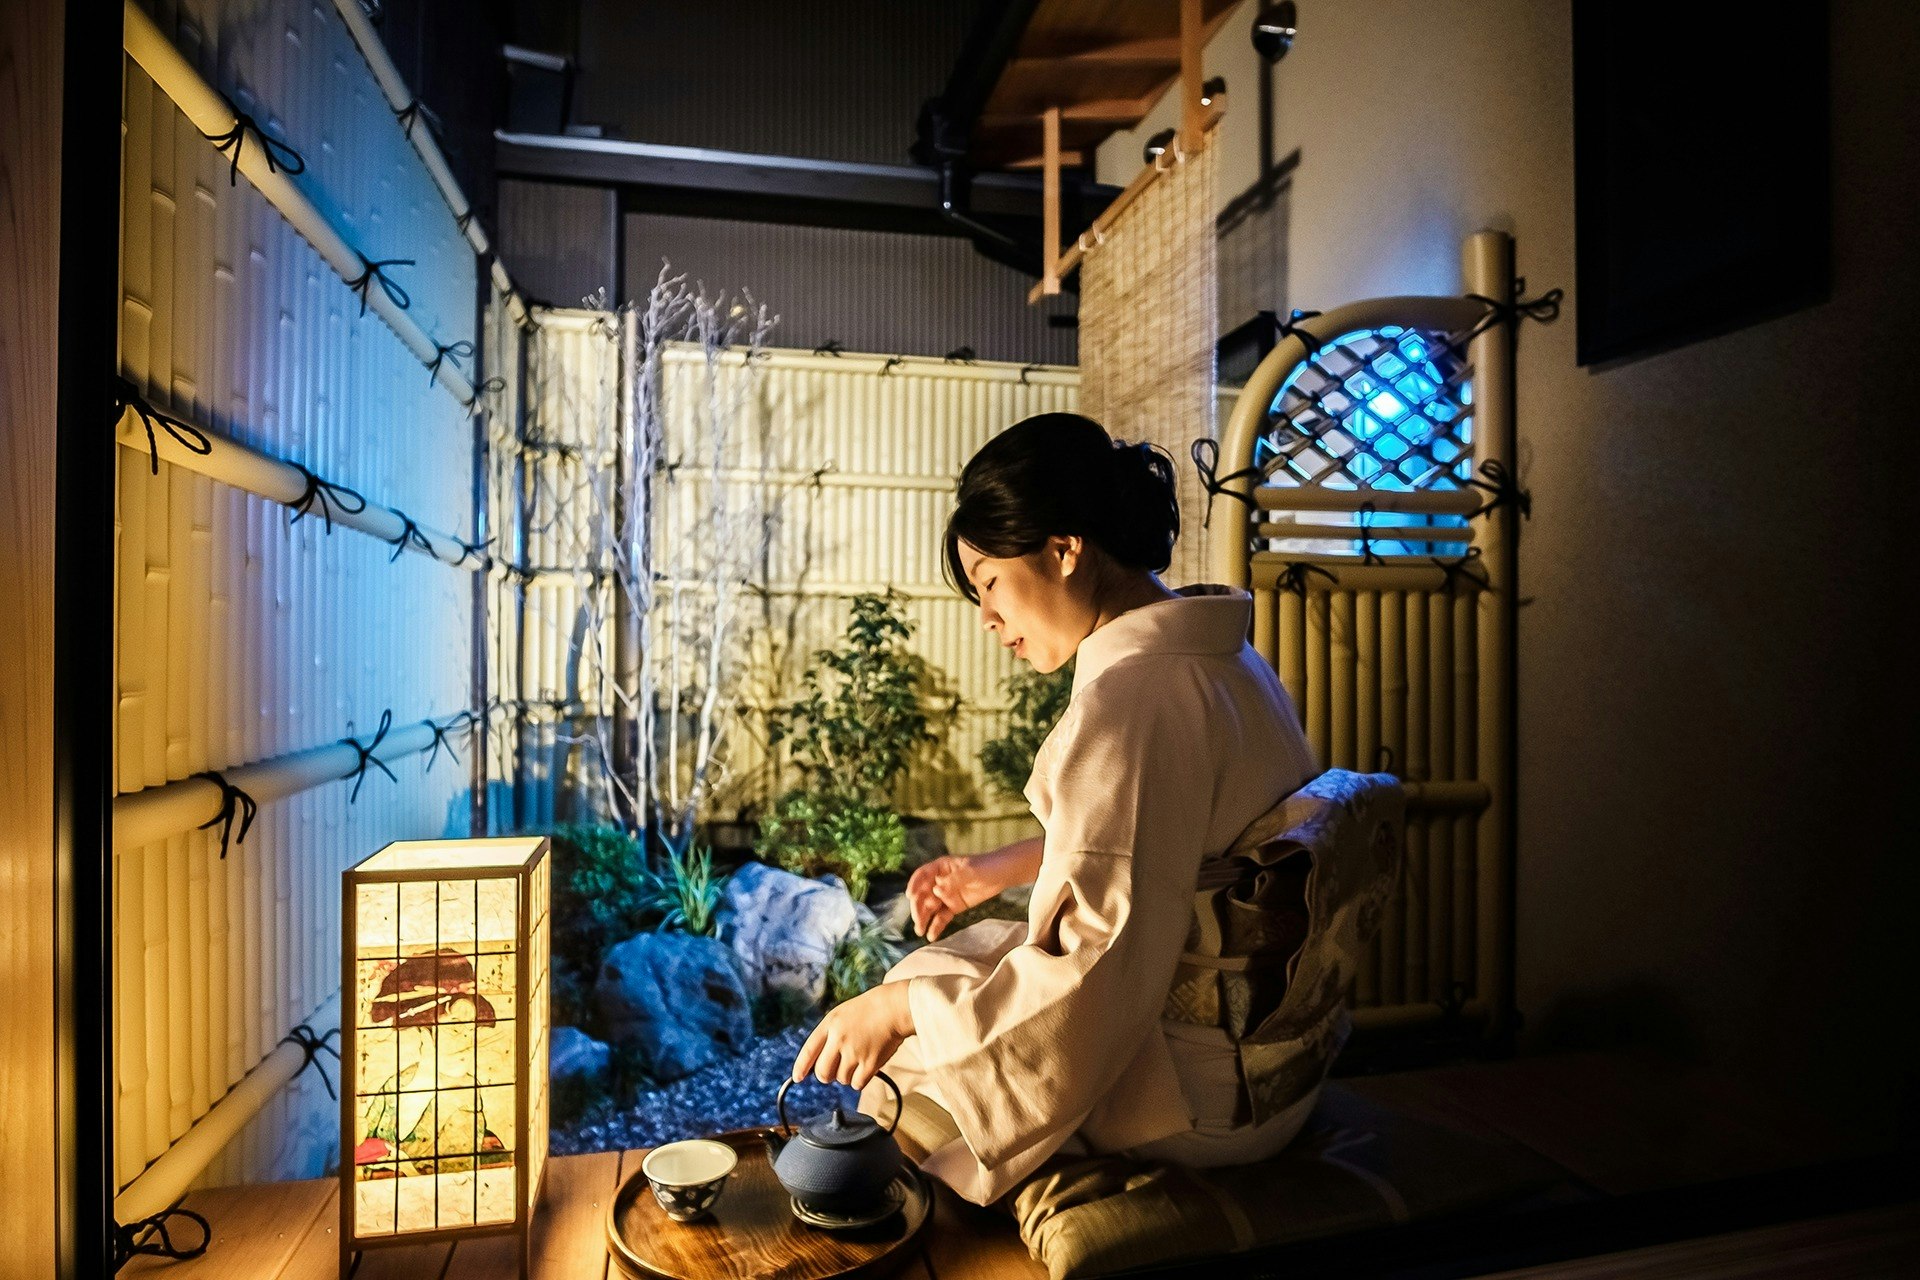 (京都魅力再発見旅プロジェクト参加)千代乃家は 明治40年の建物です 日本古建築文化京町屋風 